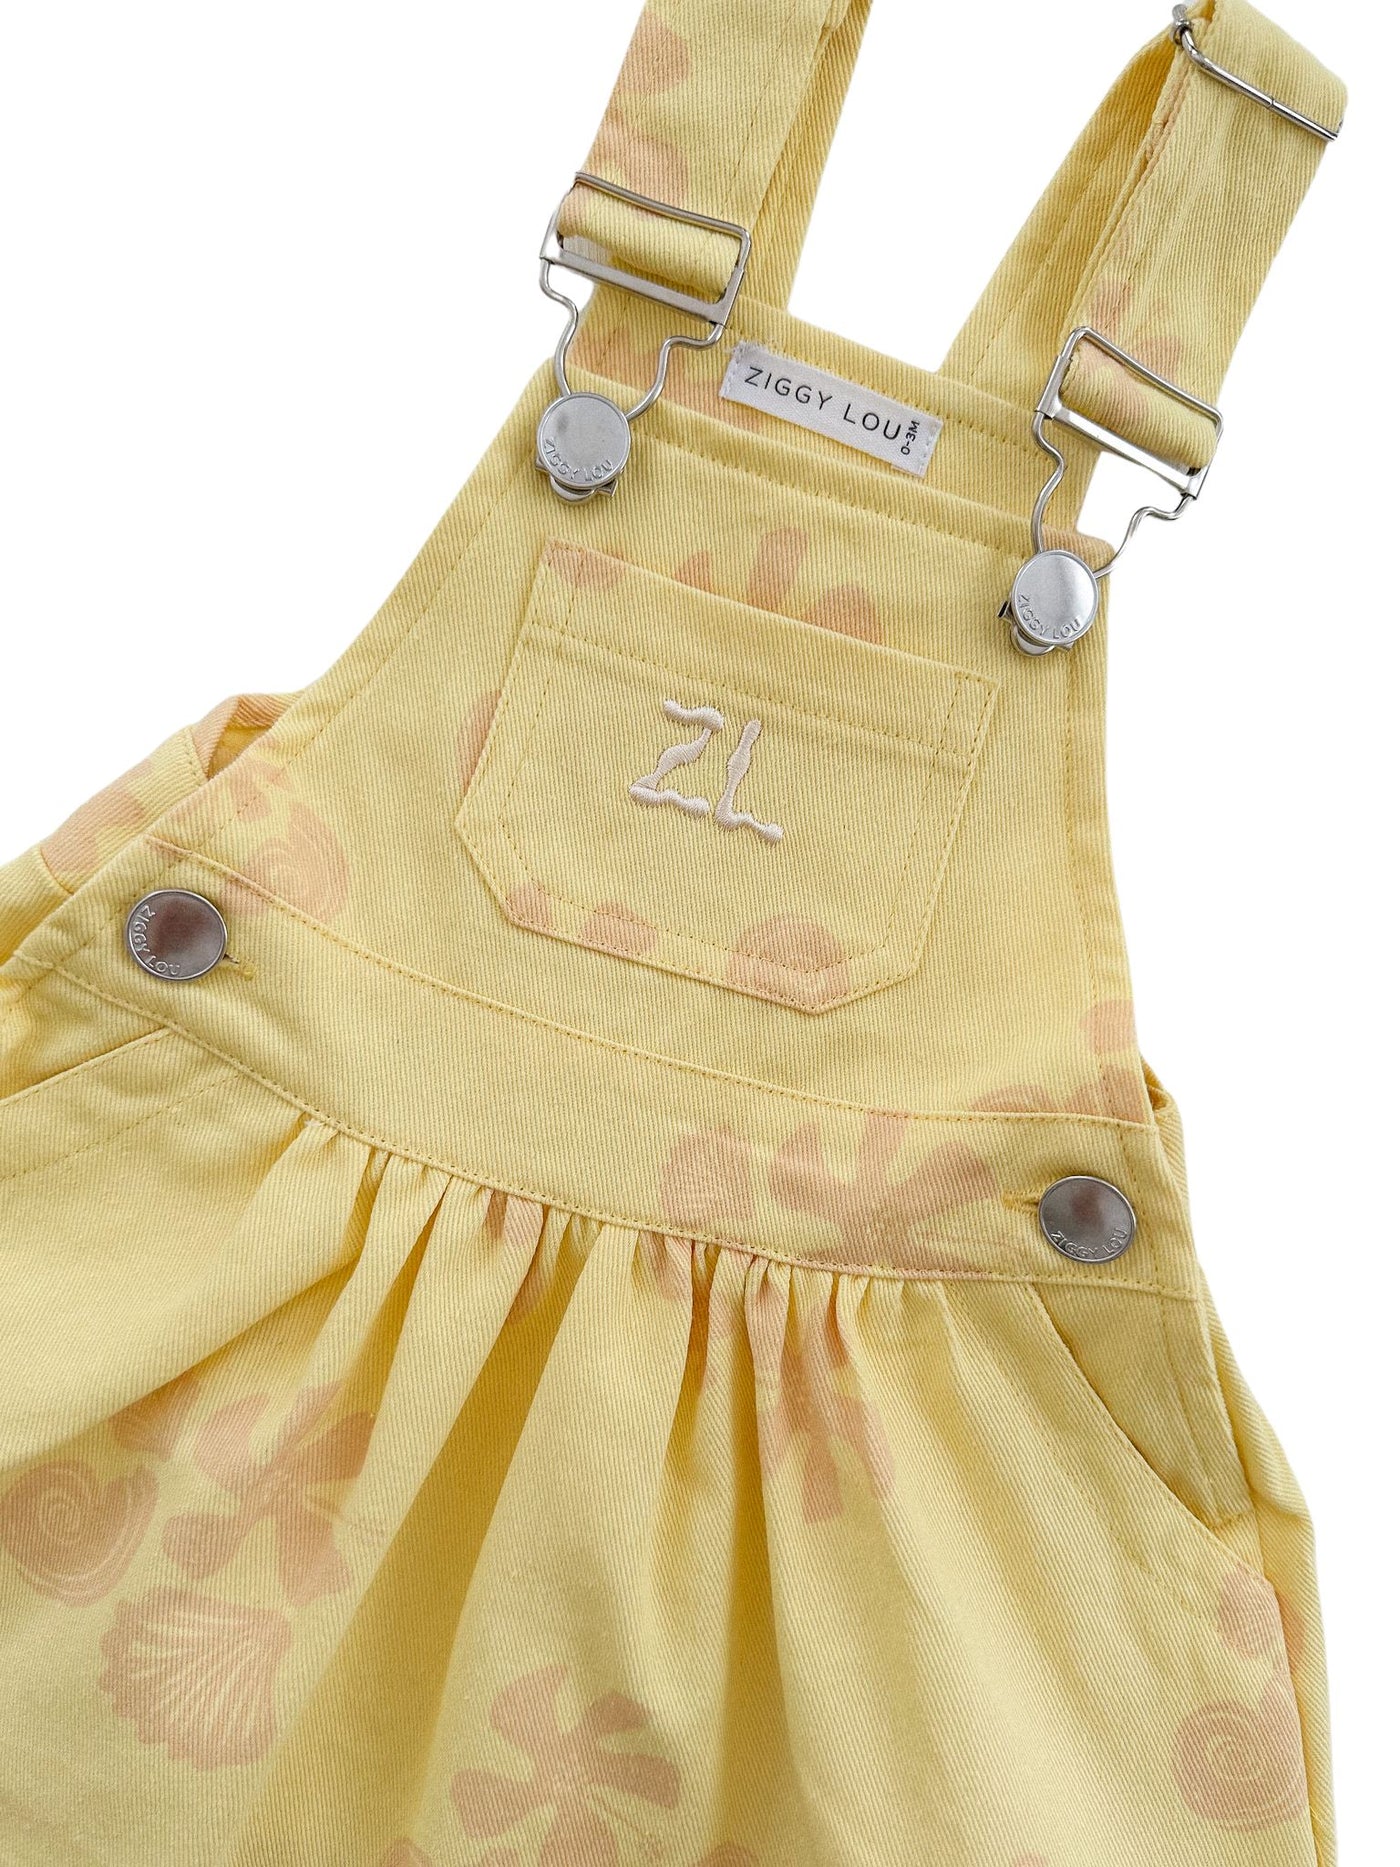 Ziggy Lou Pinafore - Seashells Sleeveless Dress Ziggy Lou 